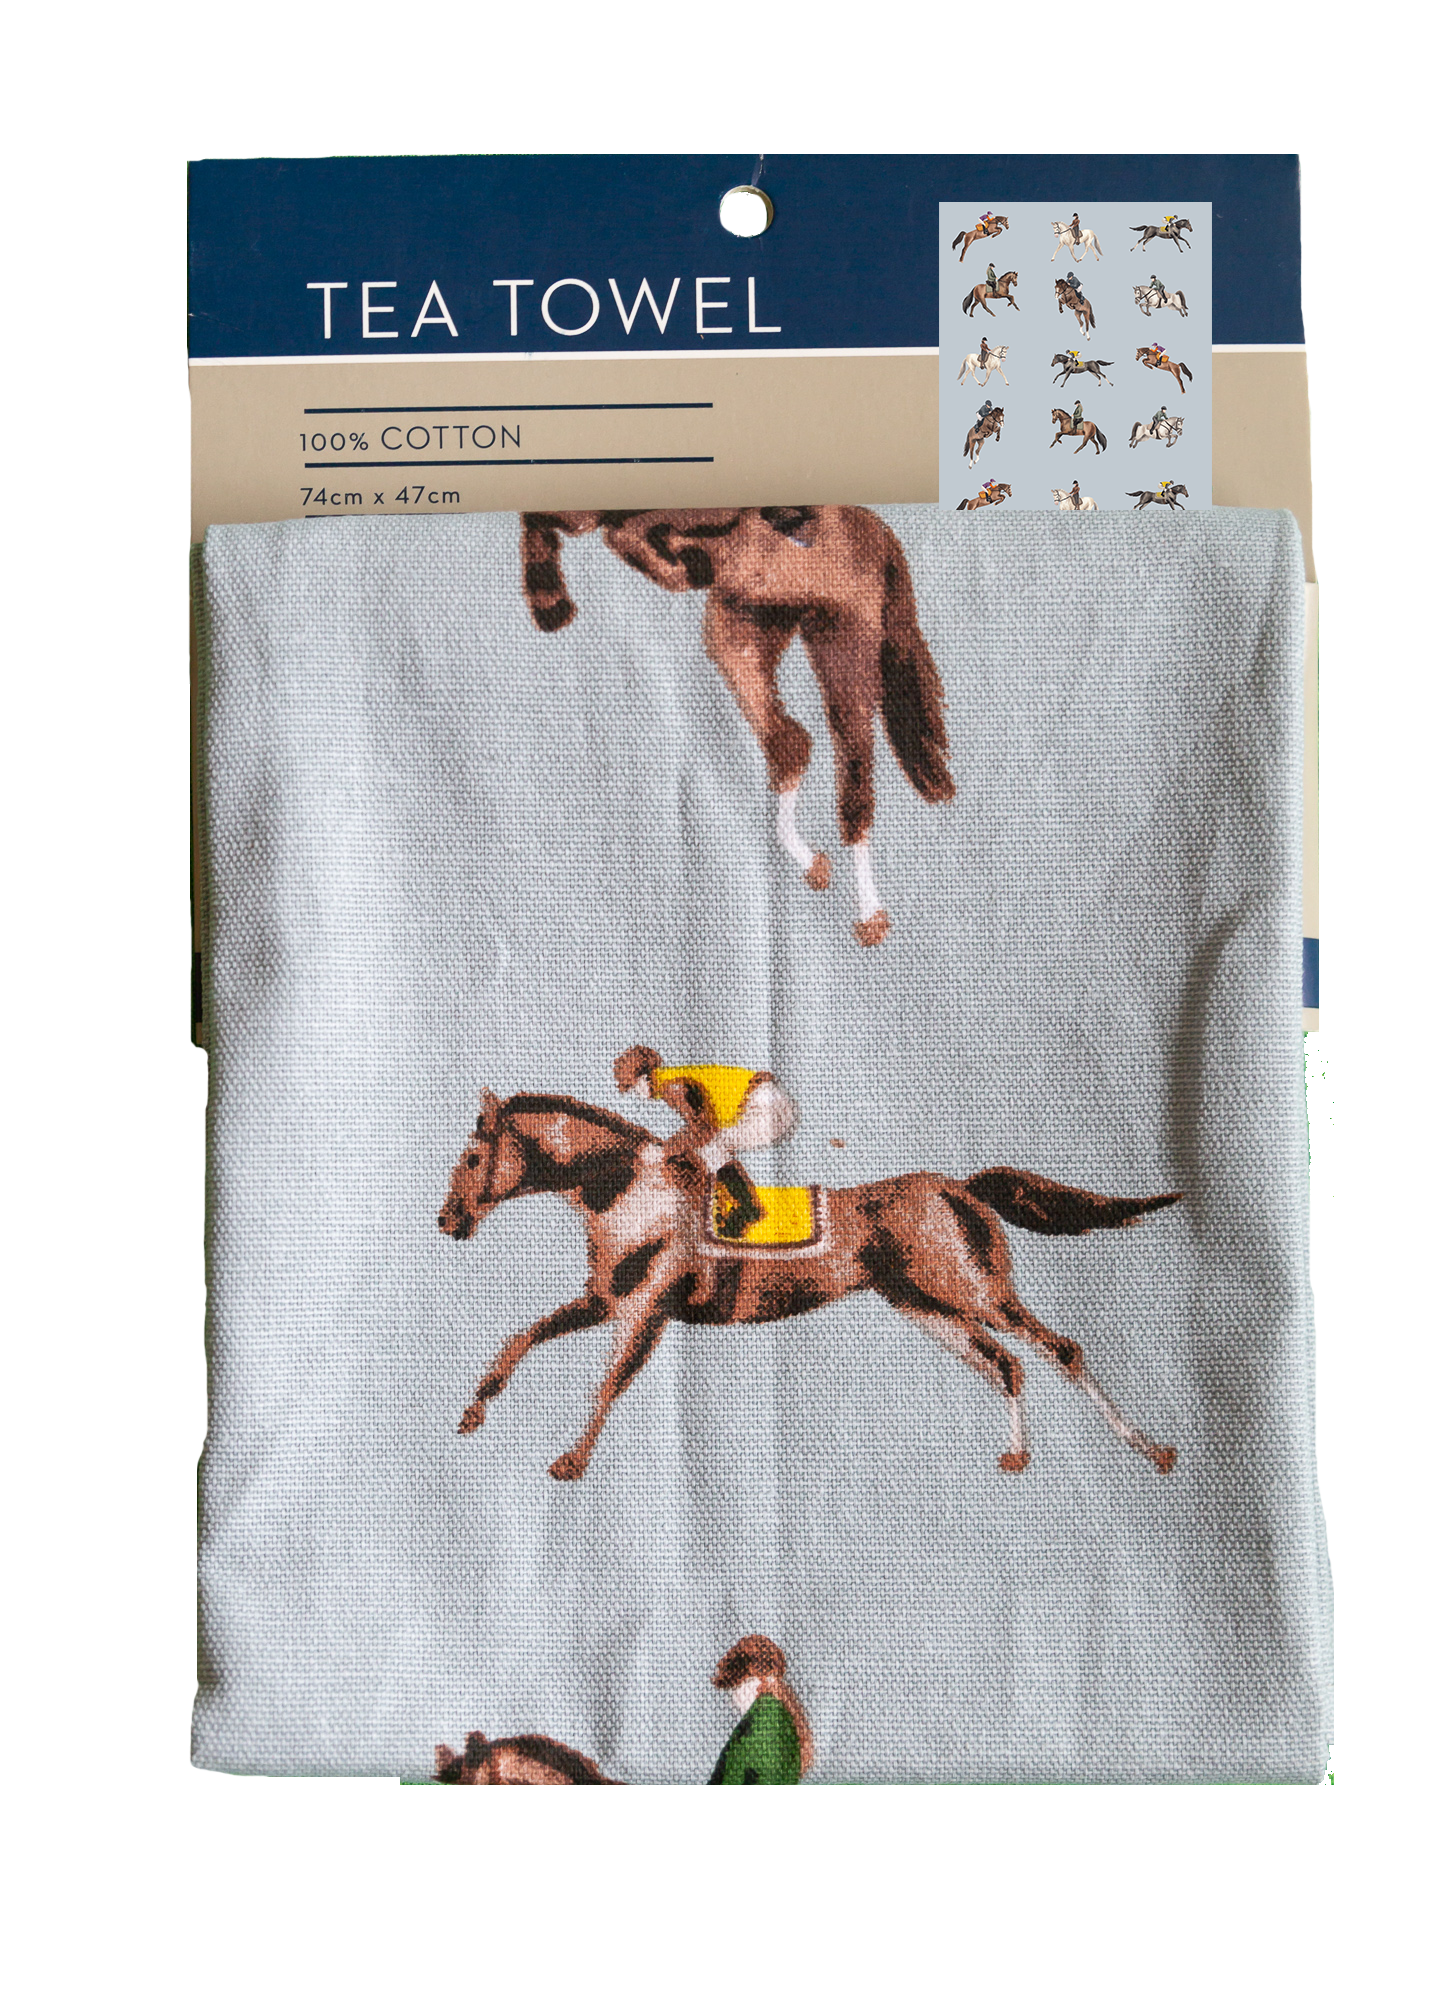 Tea Towel - Equestrian